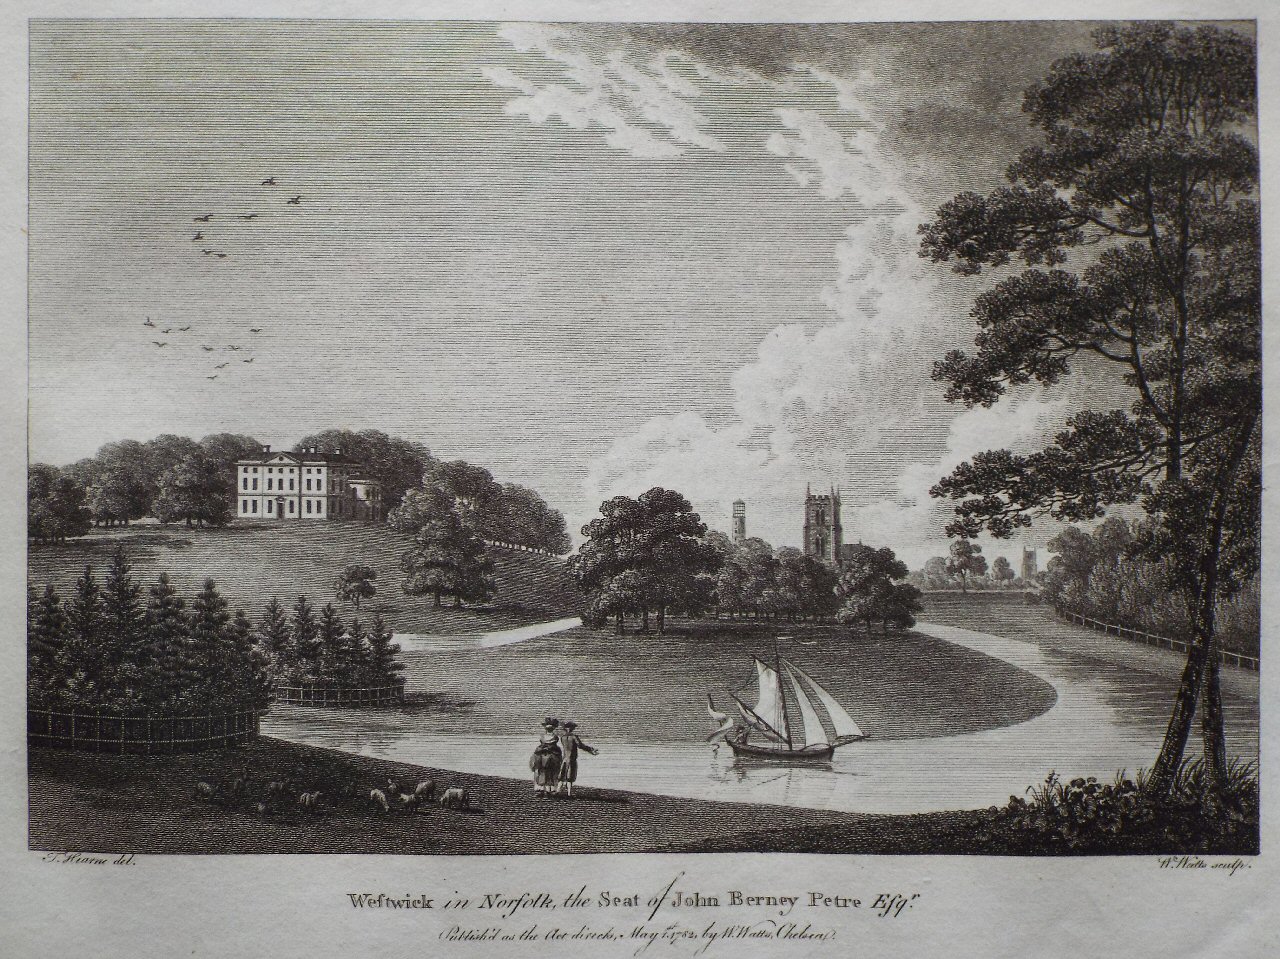 Print - Westwick in Norfolk, the Seat of John Barne Petre Esqr. - Watts